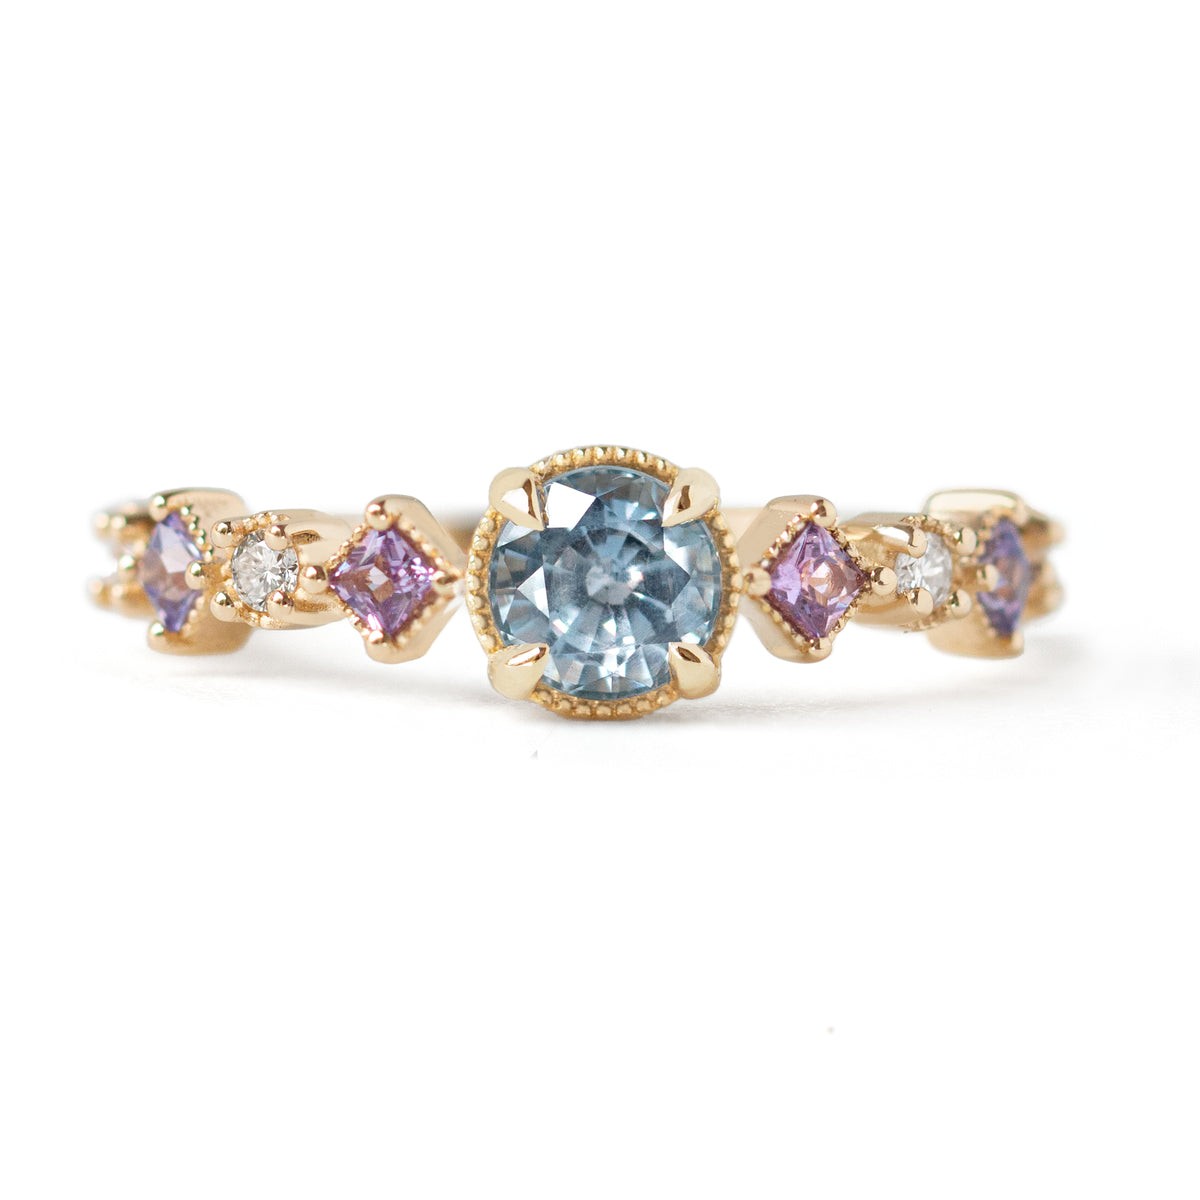 Jamie Park Jewelry - Light Blue Montana Sapphire Diamond Ring